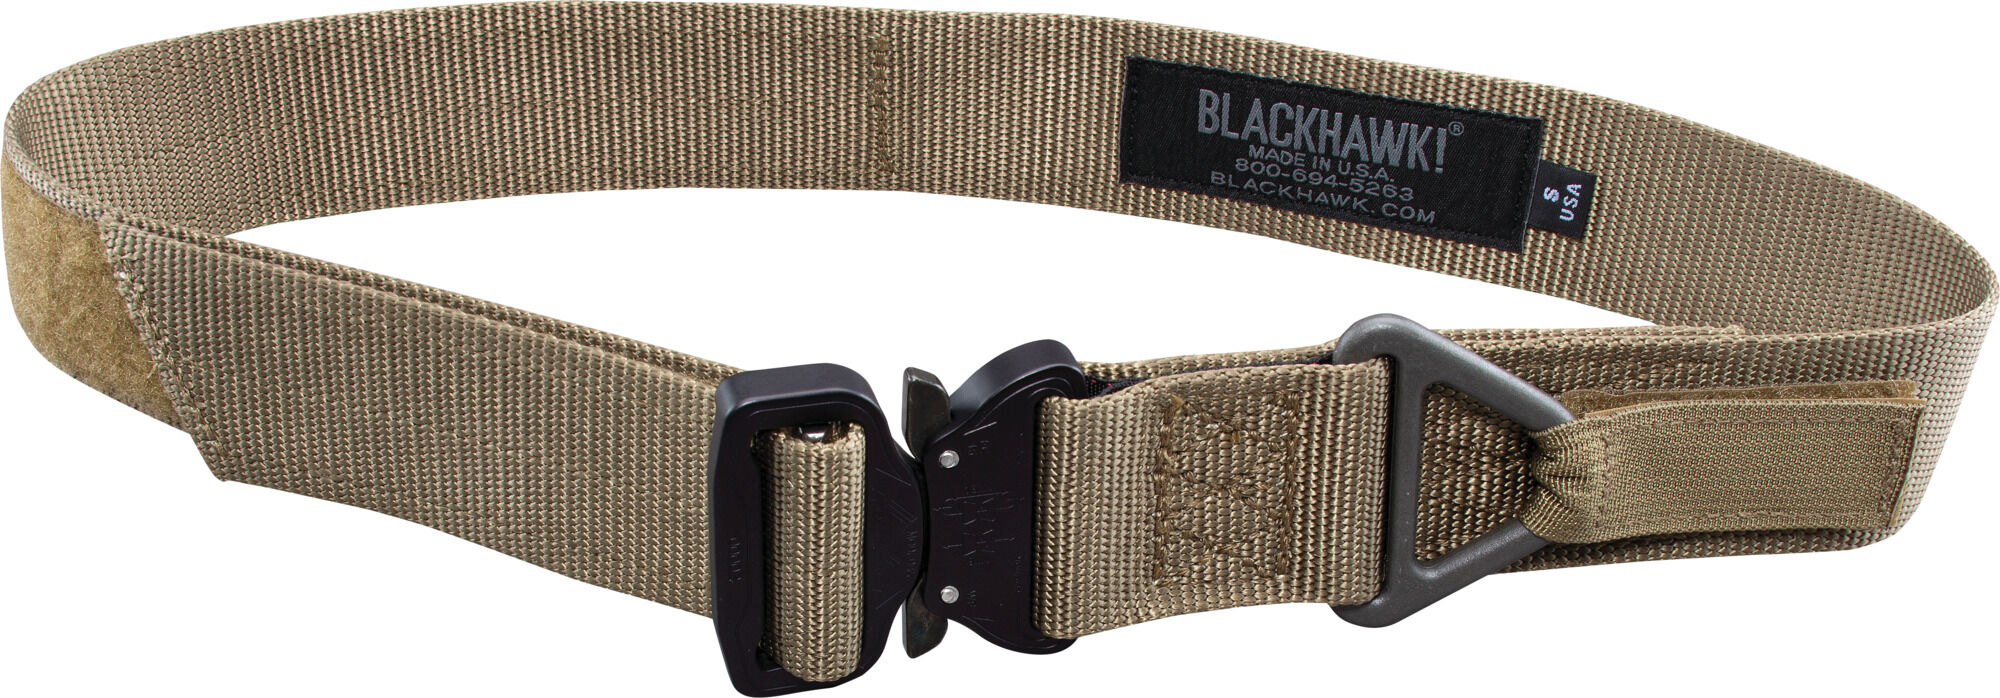 Gun Belt BlackHawk CQB Rescue Riggers Tactical Airsoft Rappelling Belt Black 